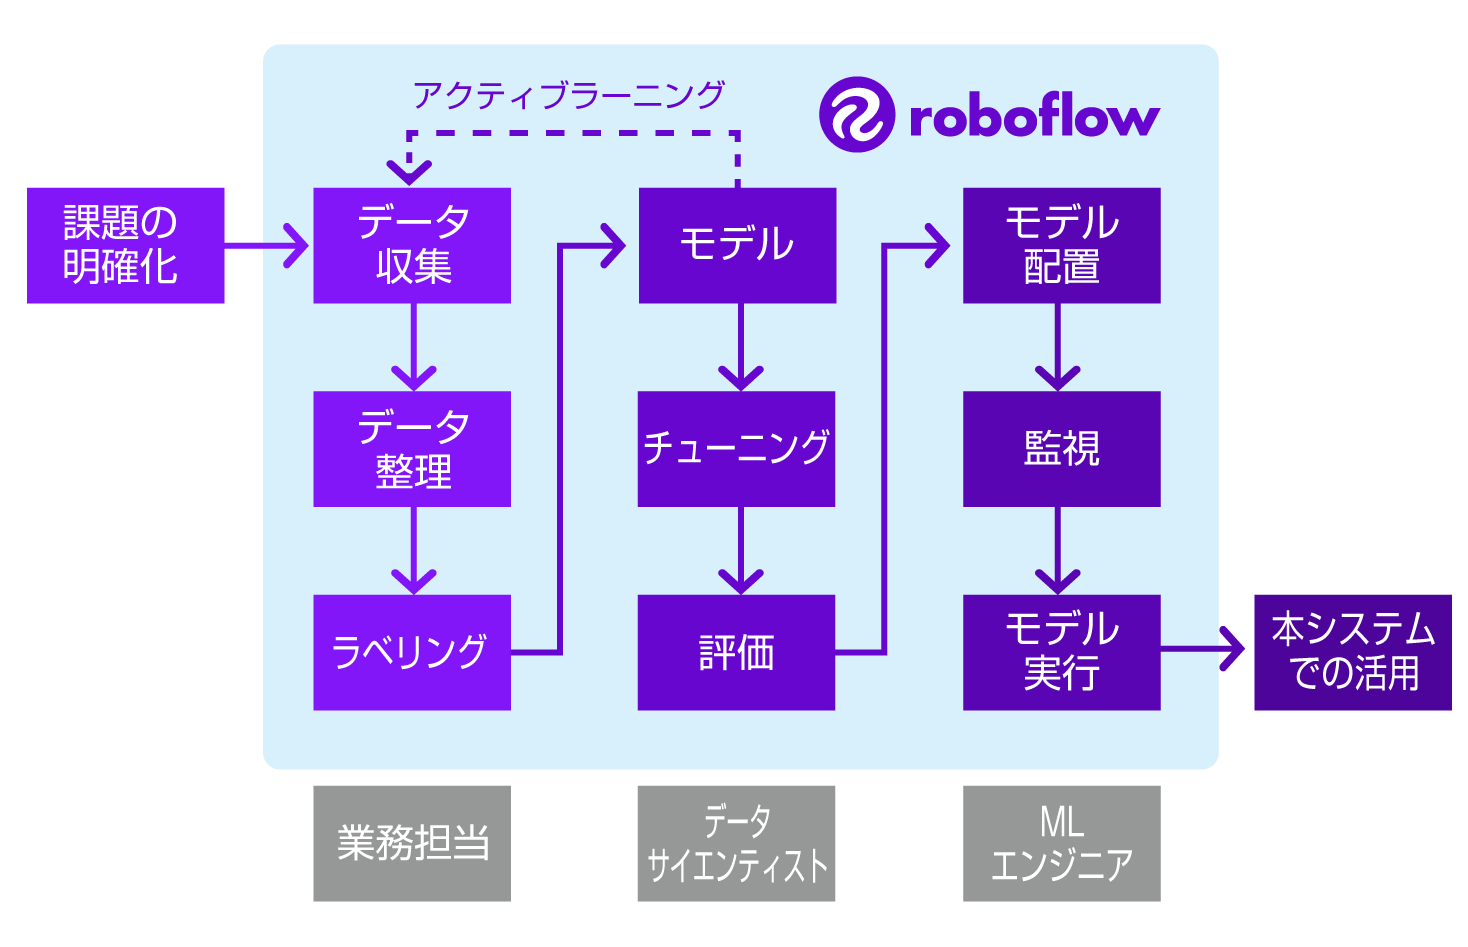 roboflowでコンピュータービジョンを作る流れ